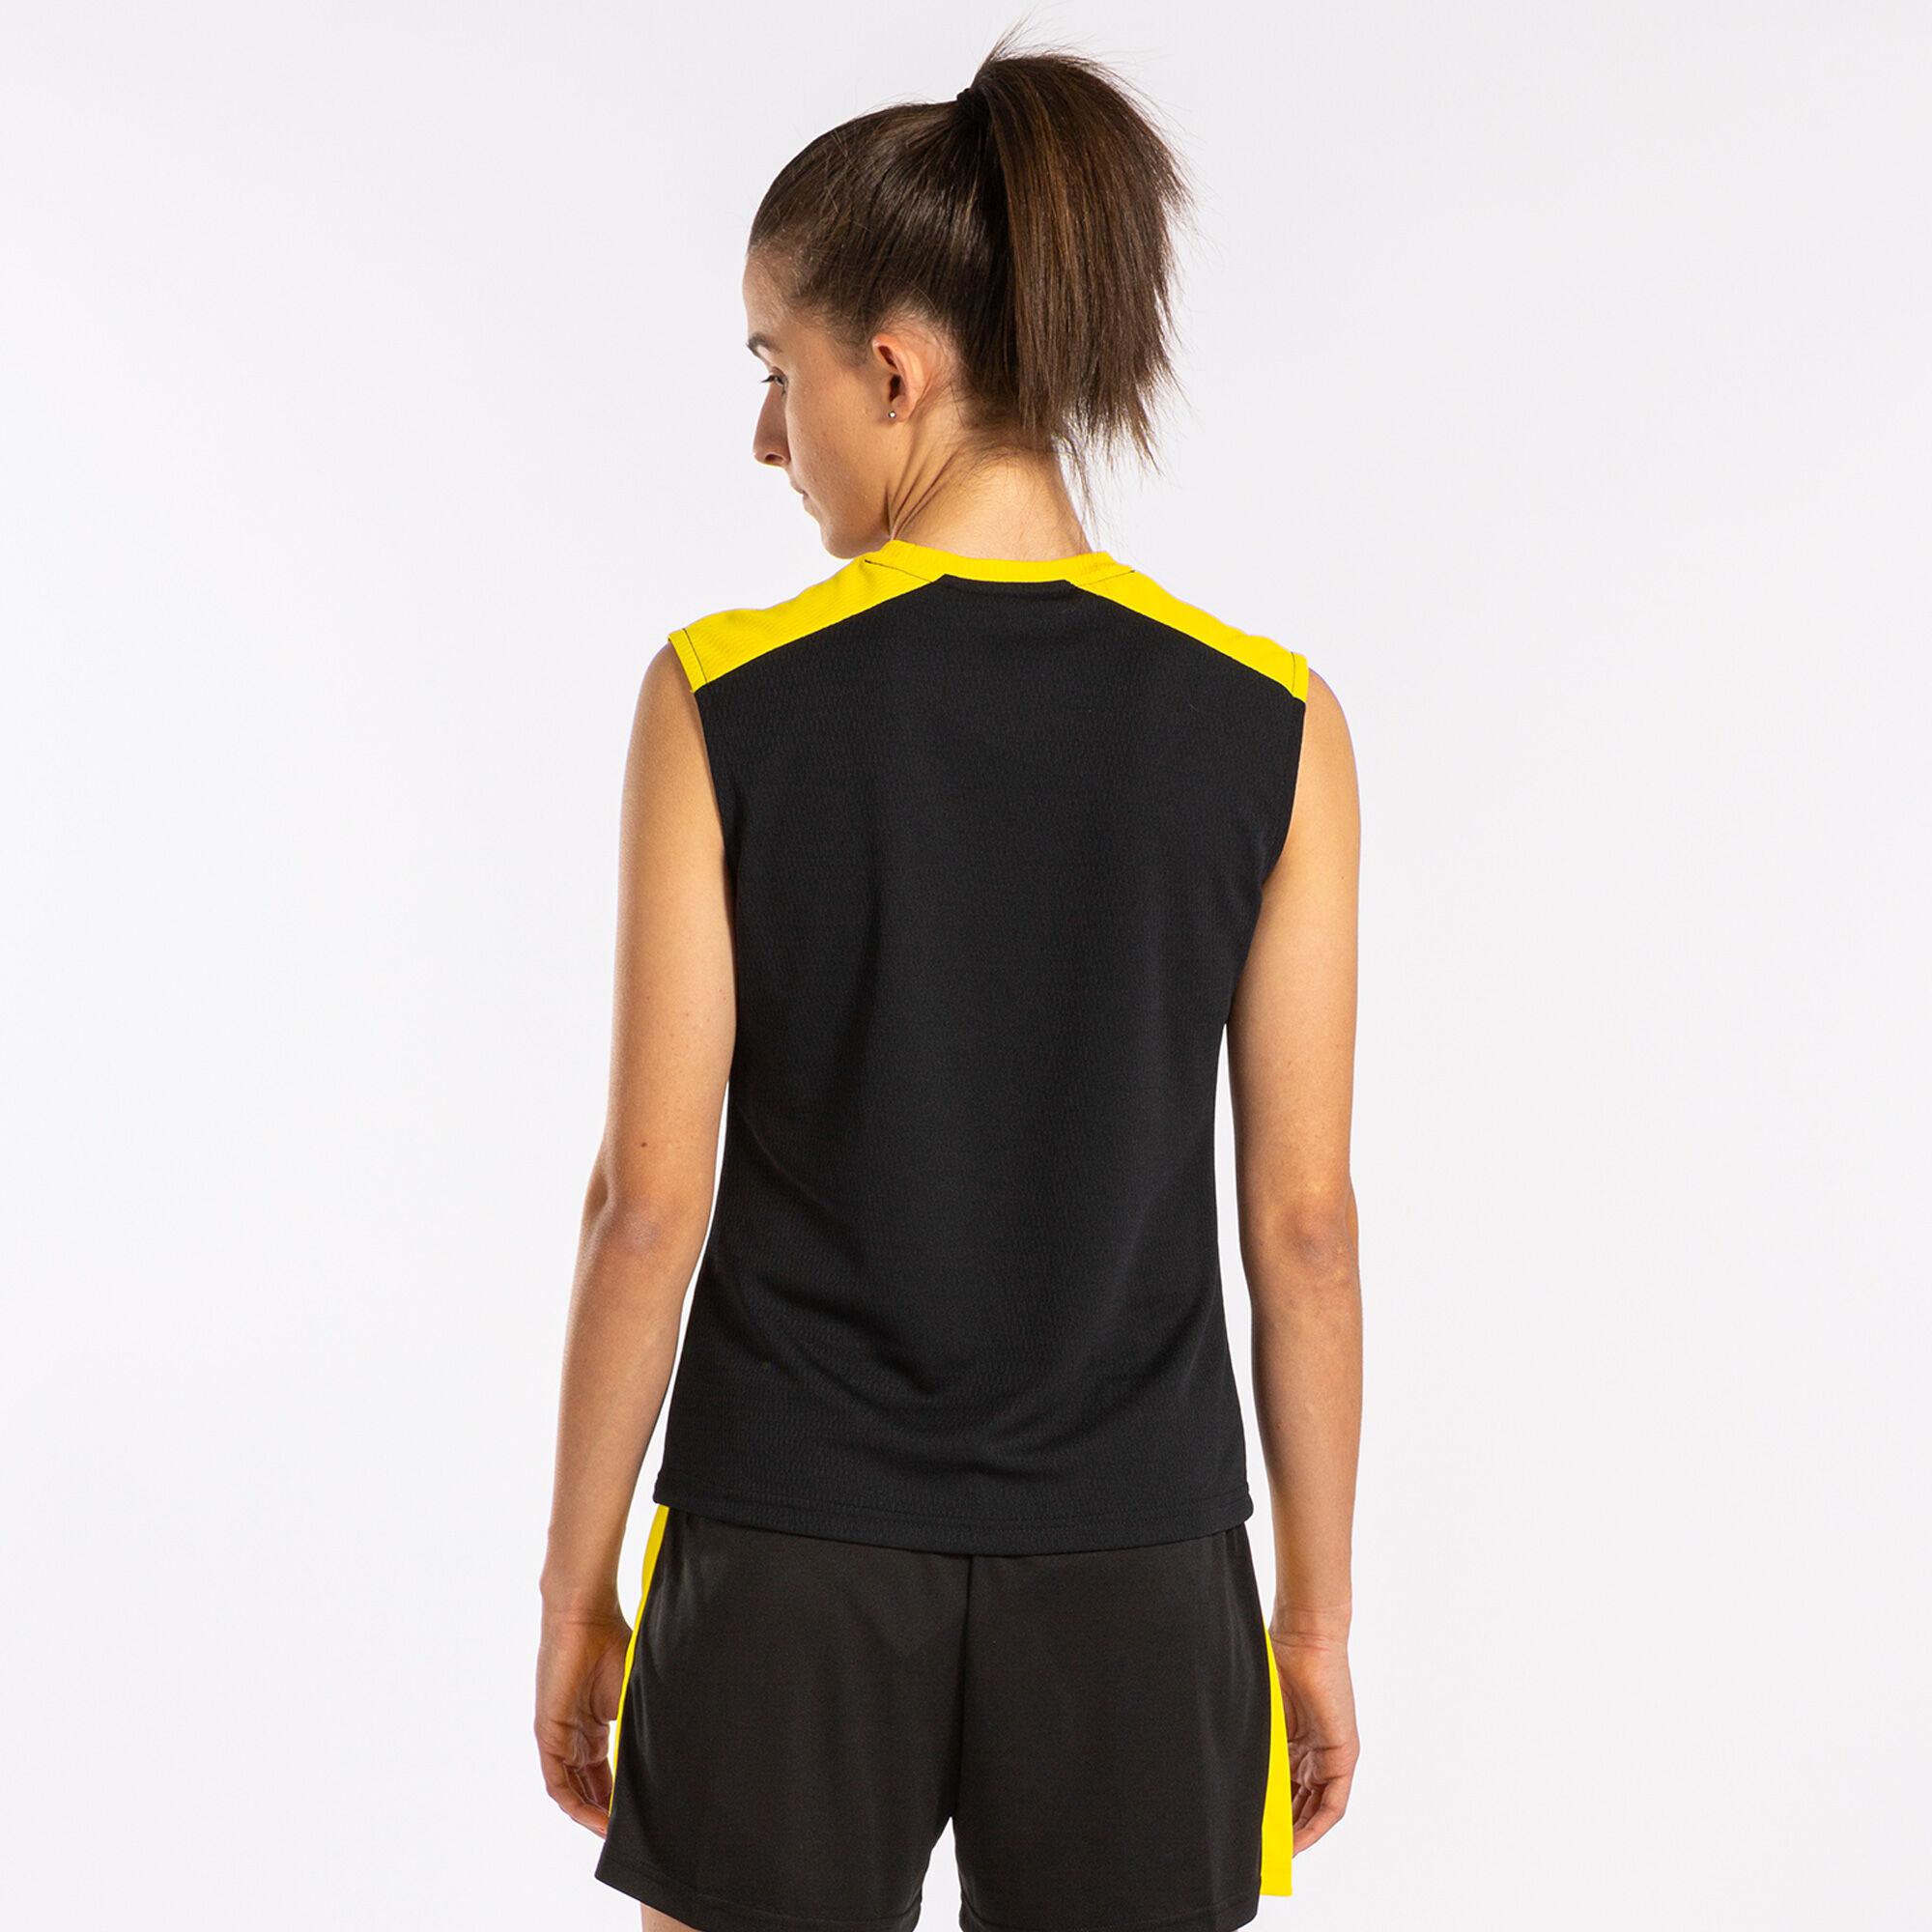 Schulterriemen-shirt frau Eco Championship schwarz gelb